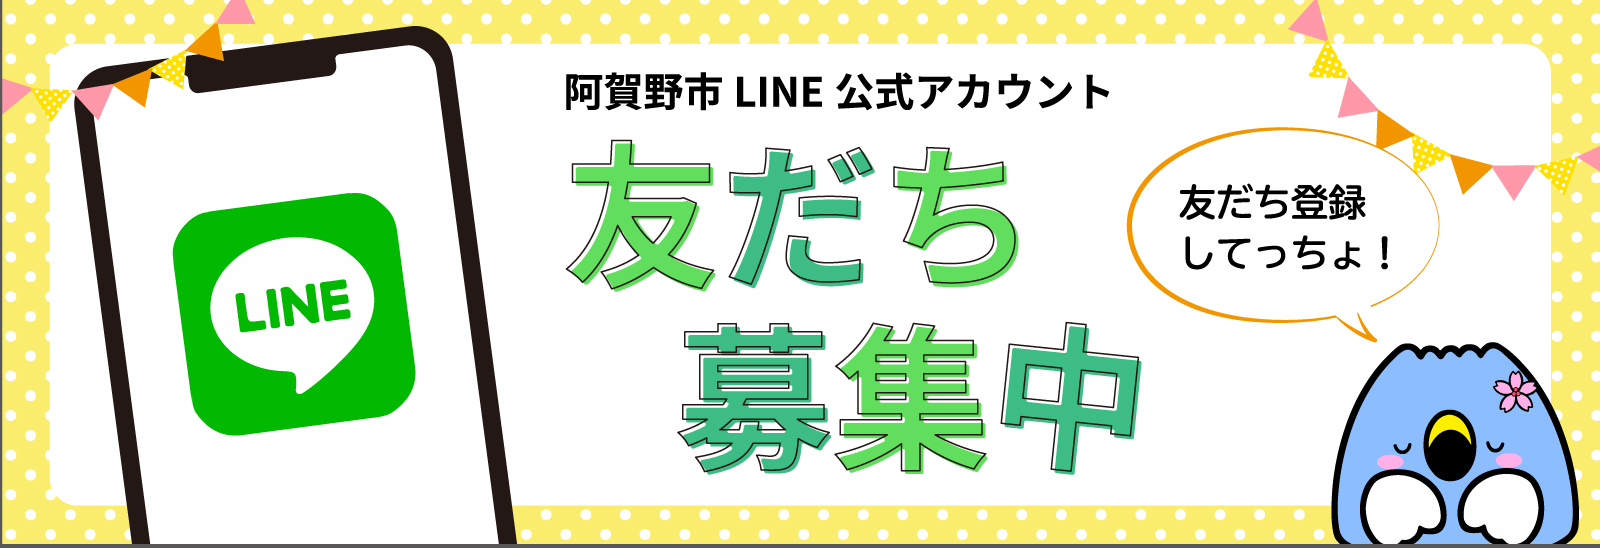 阿賀野市LINE公式アカウント 友だち募集中 「友だち登録してっちょ！」